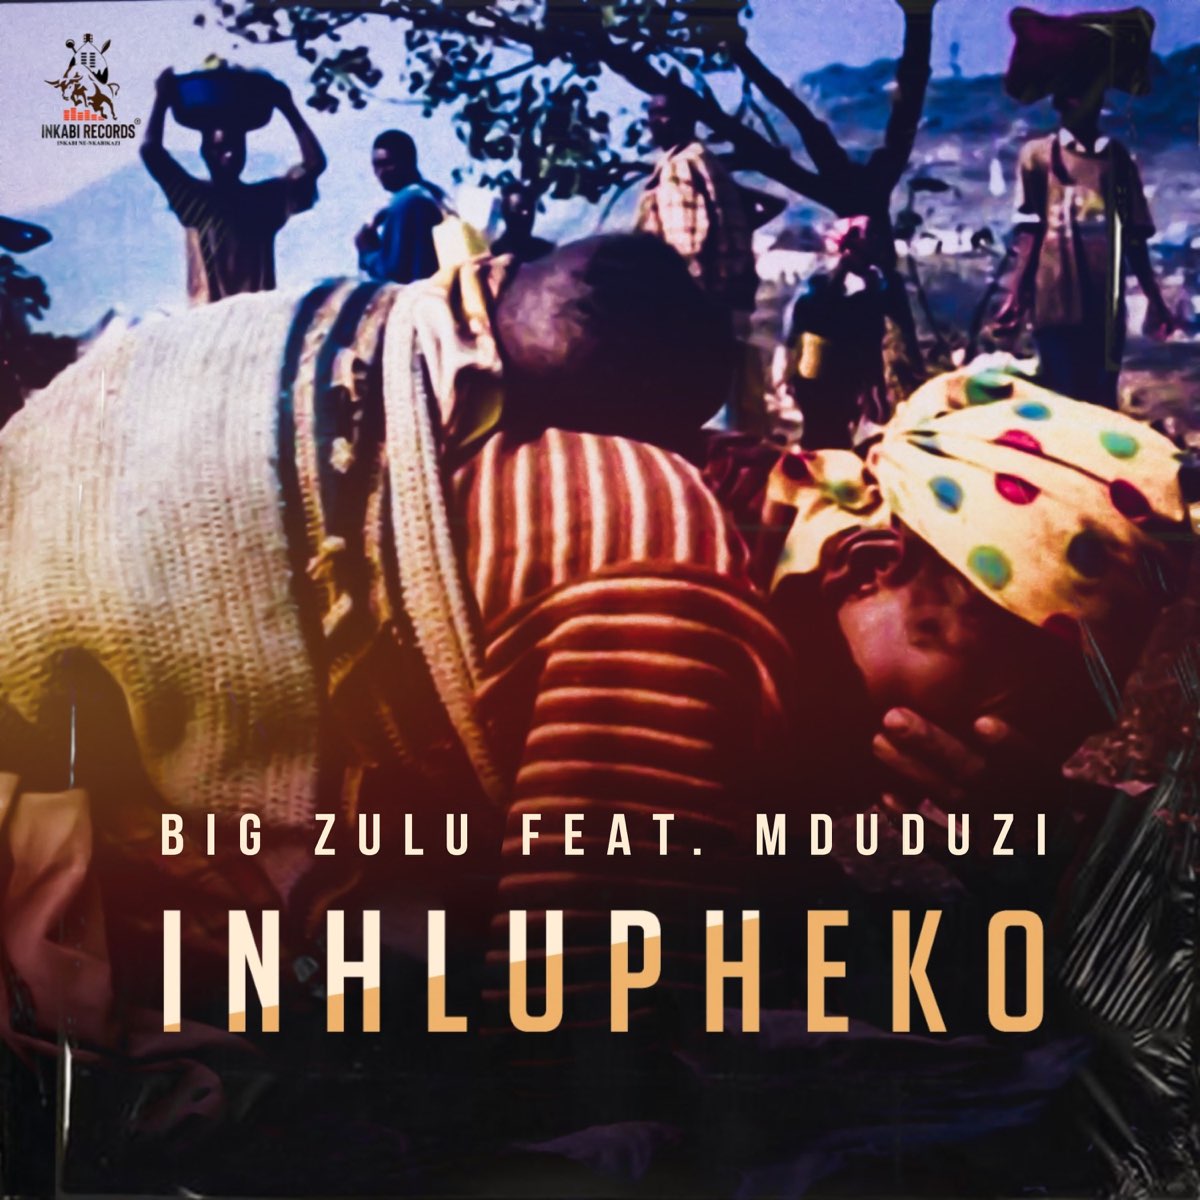 Big Zulu Inhlupheko Lyrics Translation in English (Ft. Mduduzi Ncube